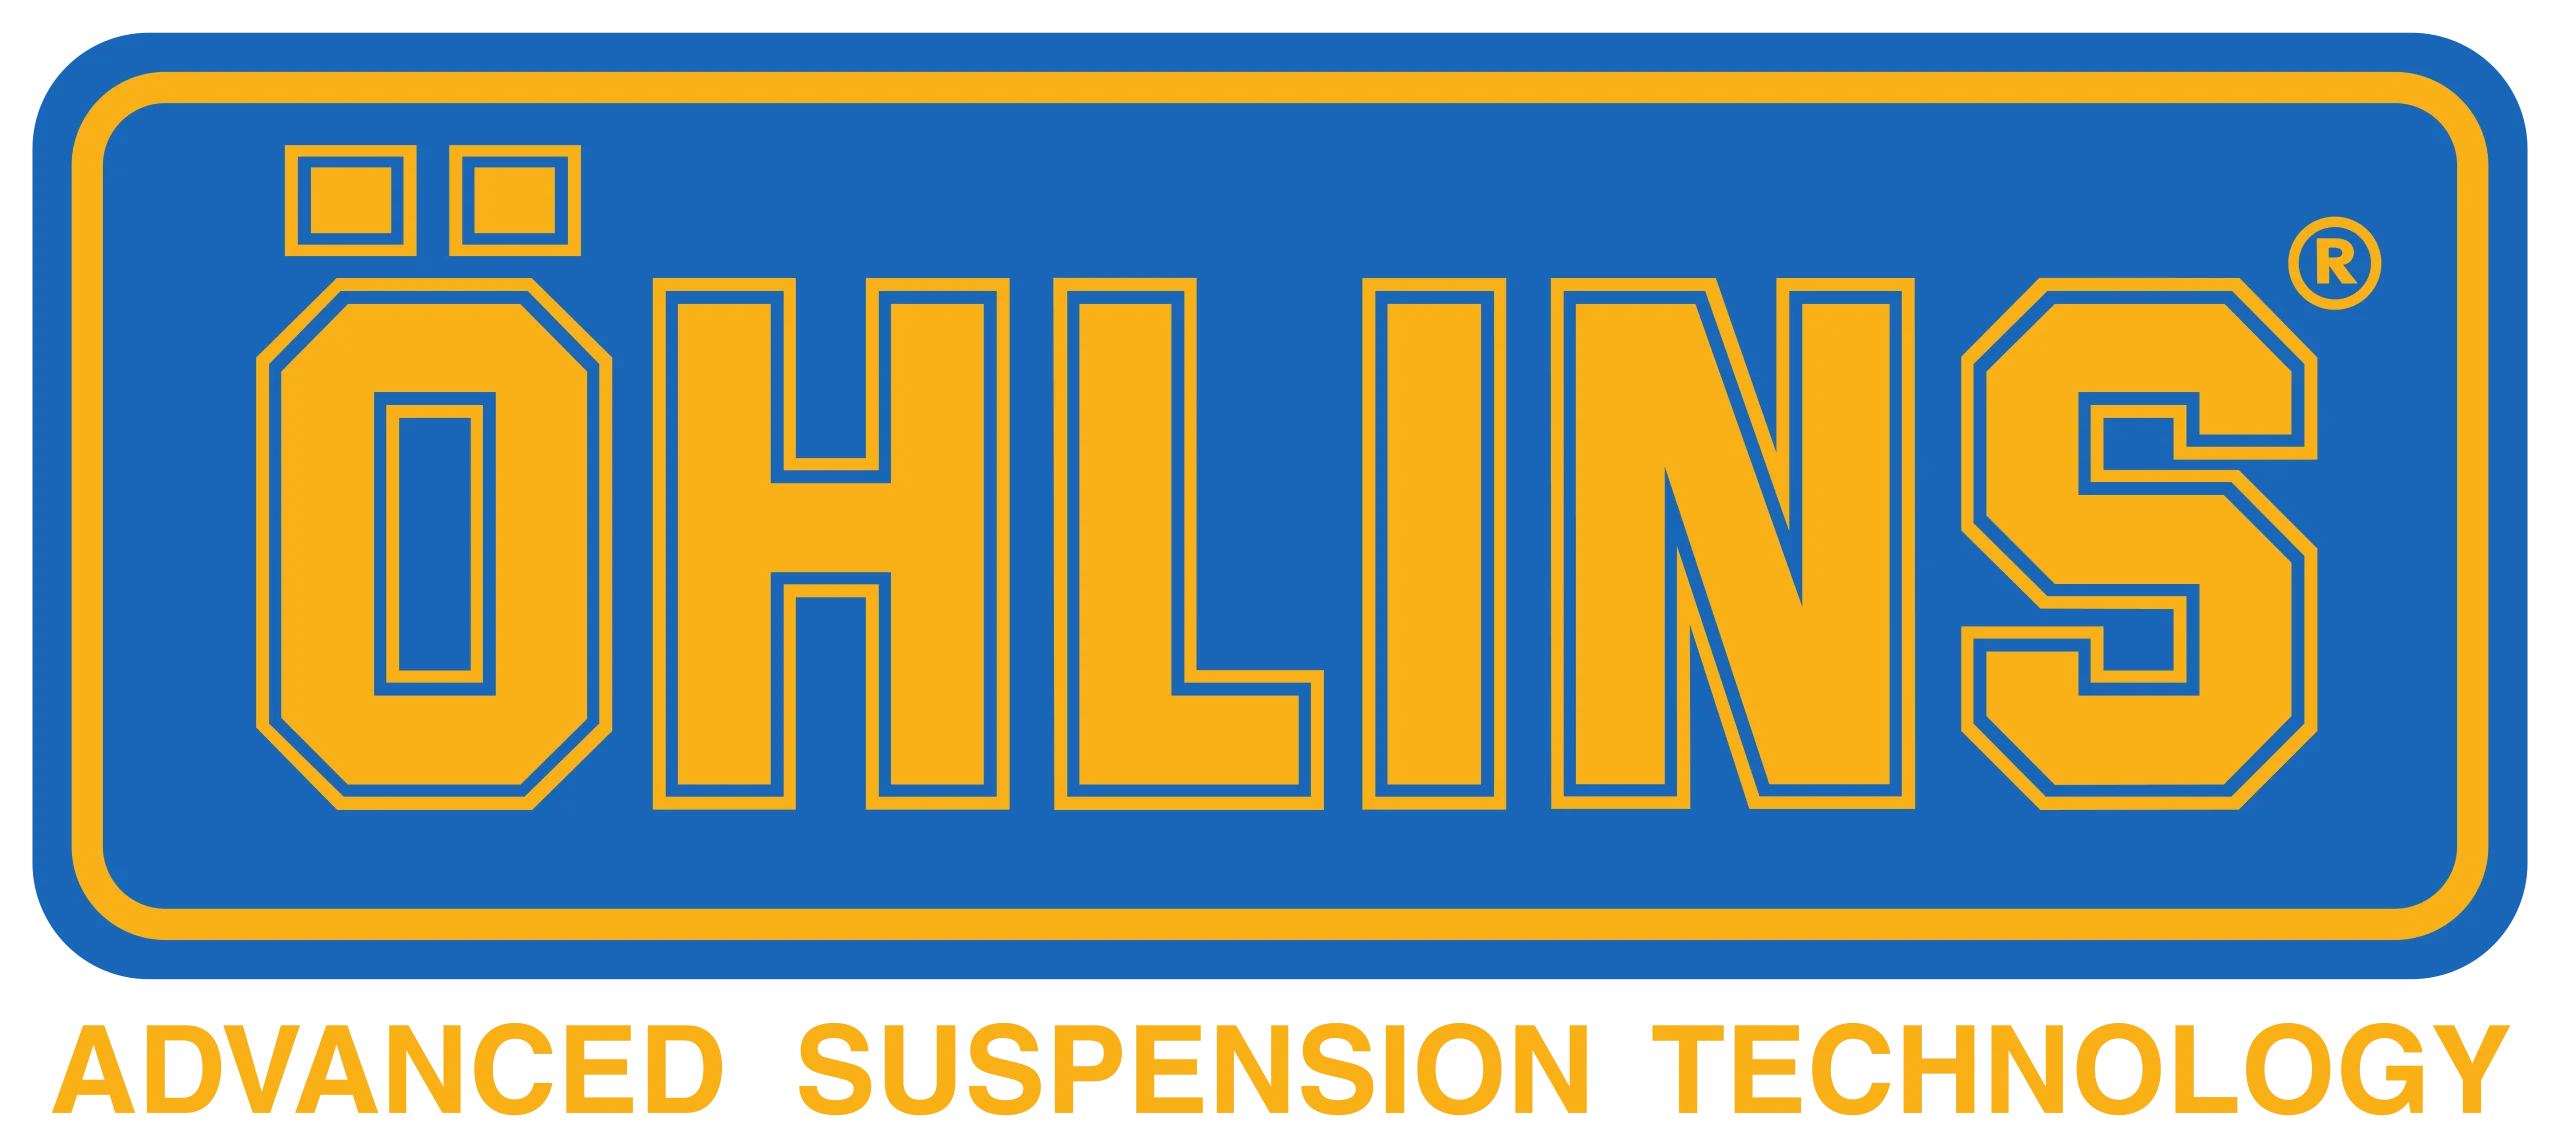 ohlins_logo